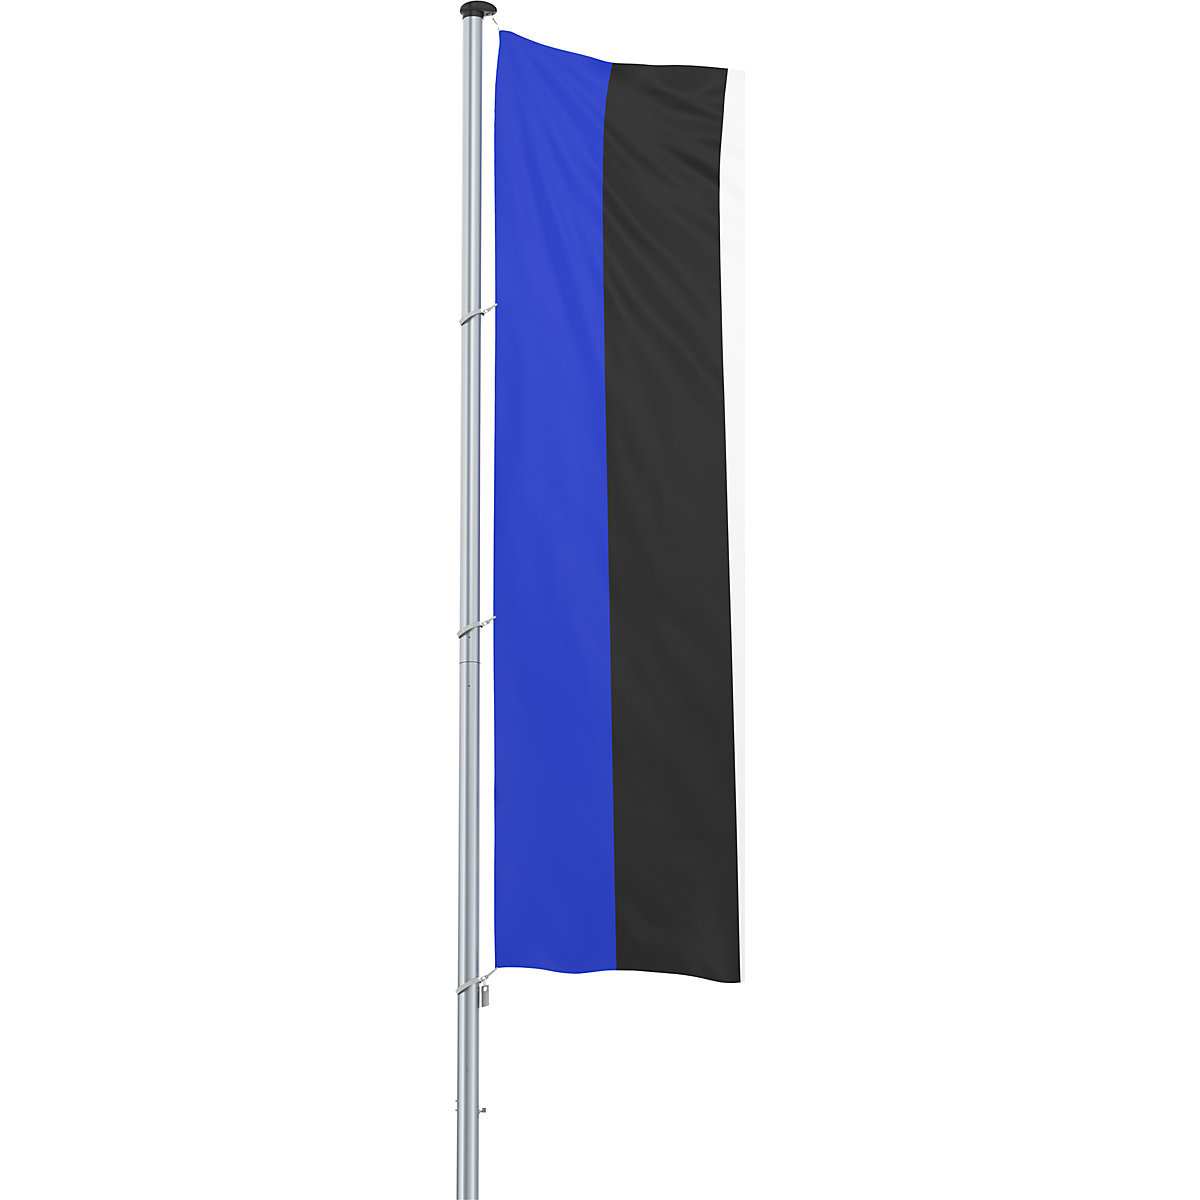 Bandeira para içar/bandeira nacional – Mannus, formato 1,2 x 3 m, Estónia-17